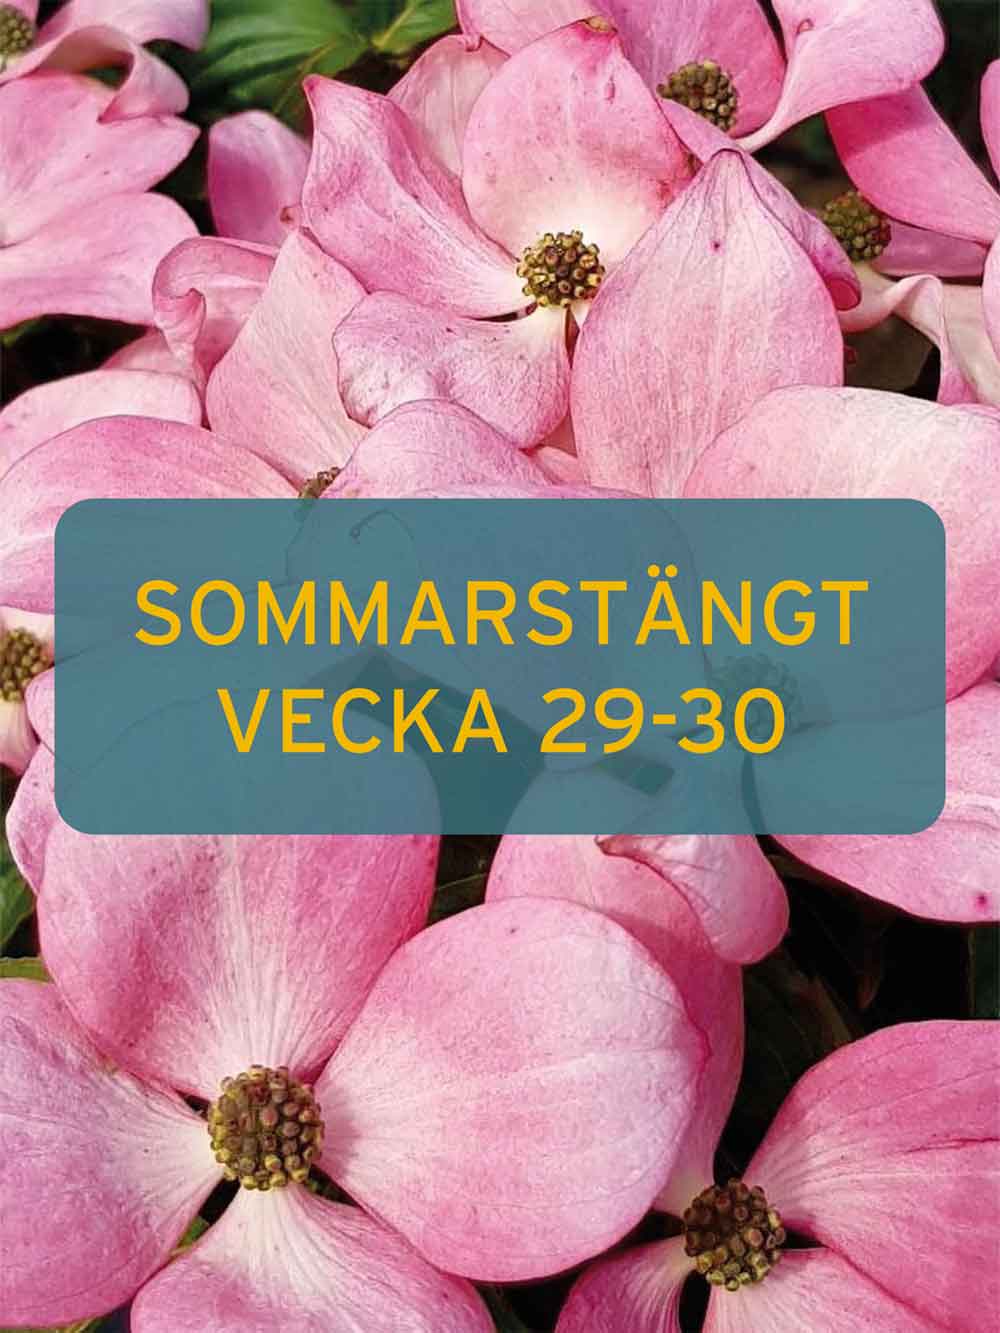 Stångby Plantskola. Nyhetsbrev. Sommartstängt 2023 vecka 29-30.